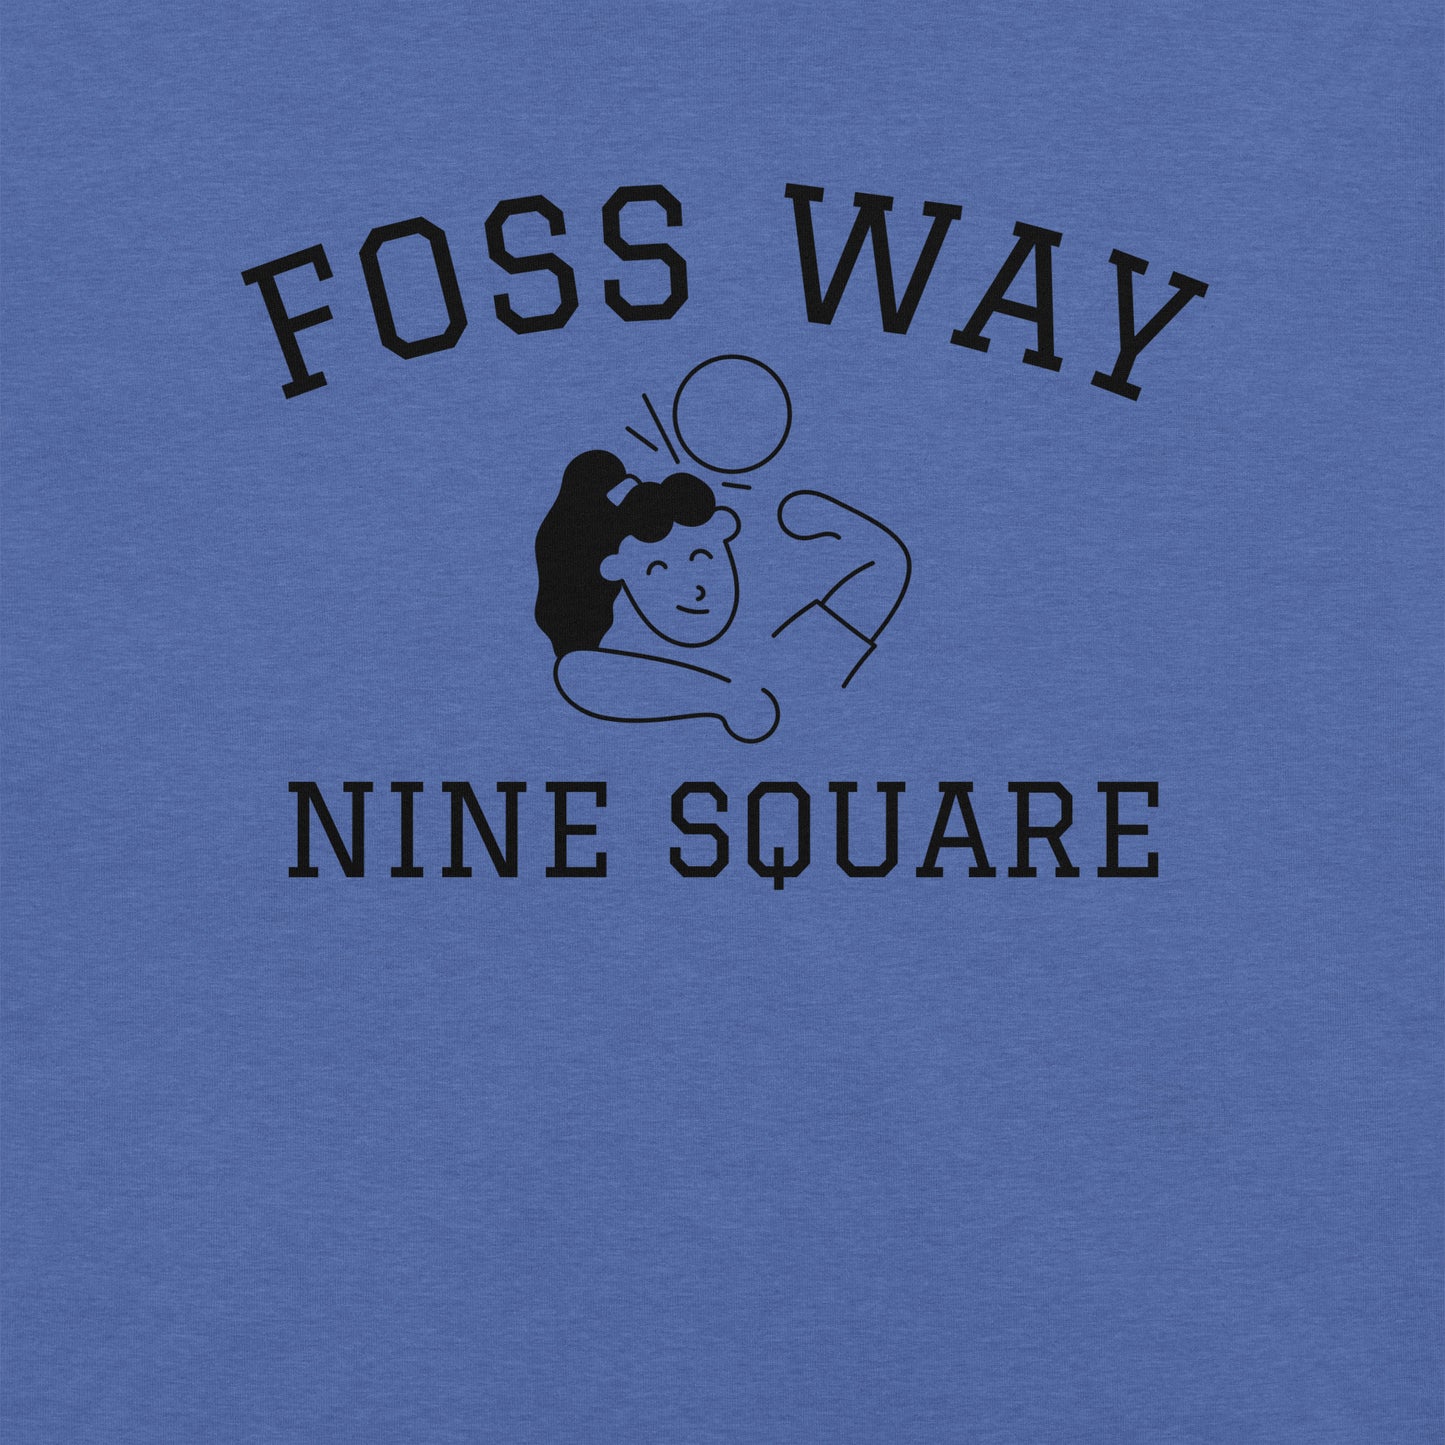 Foss Way Nine Square Women's T-shirt